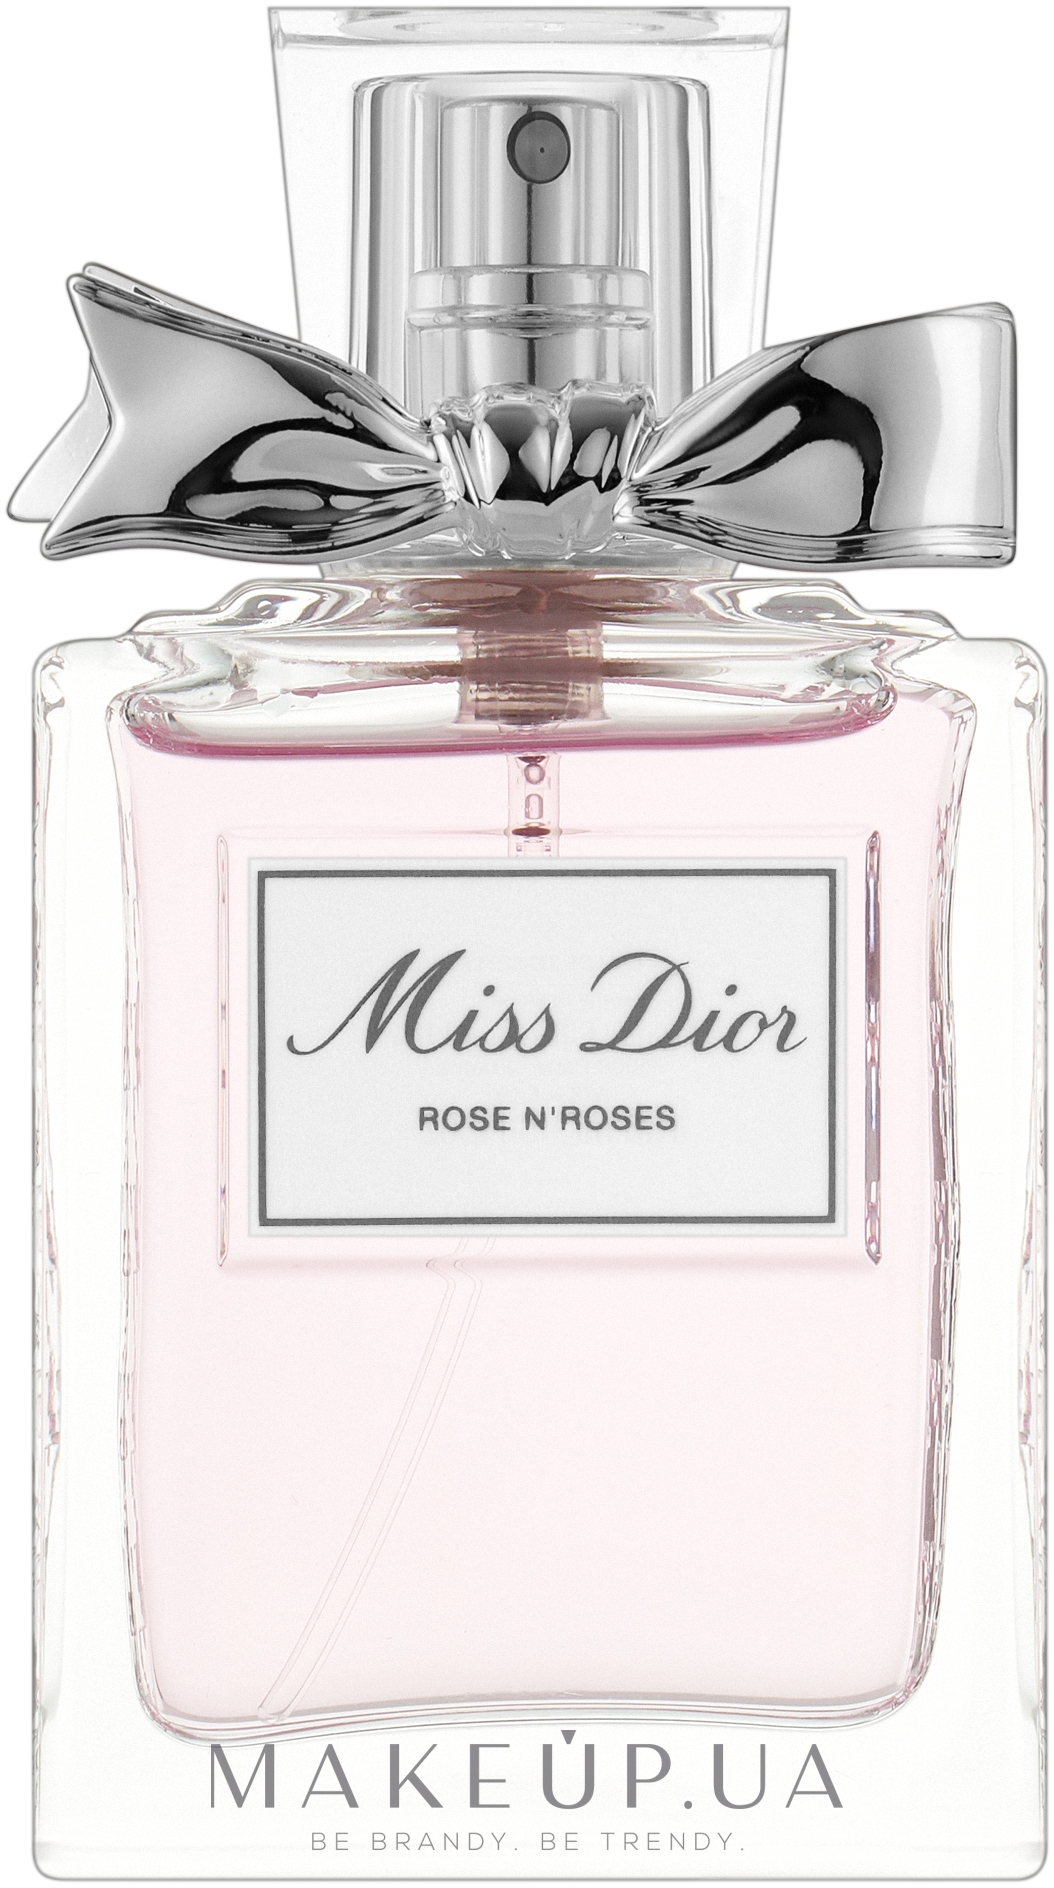 Dior Miss Dior Rose N'Roses